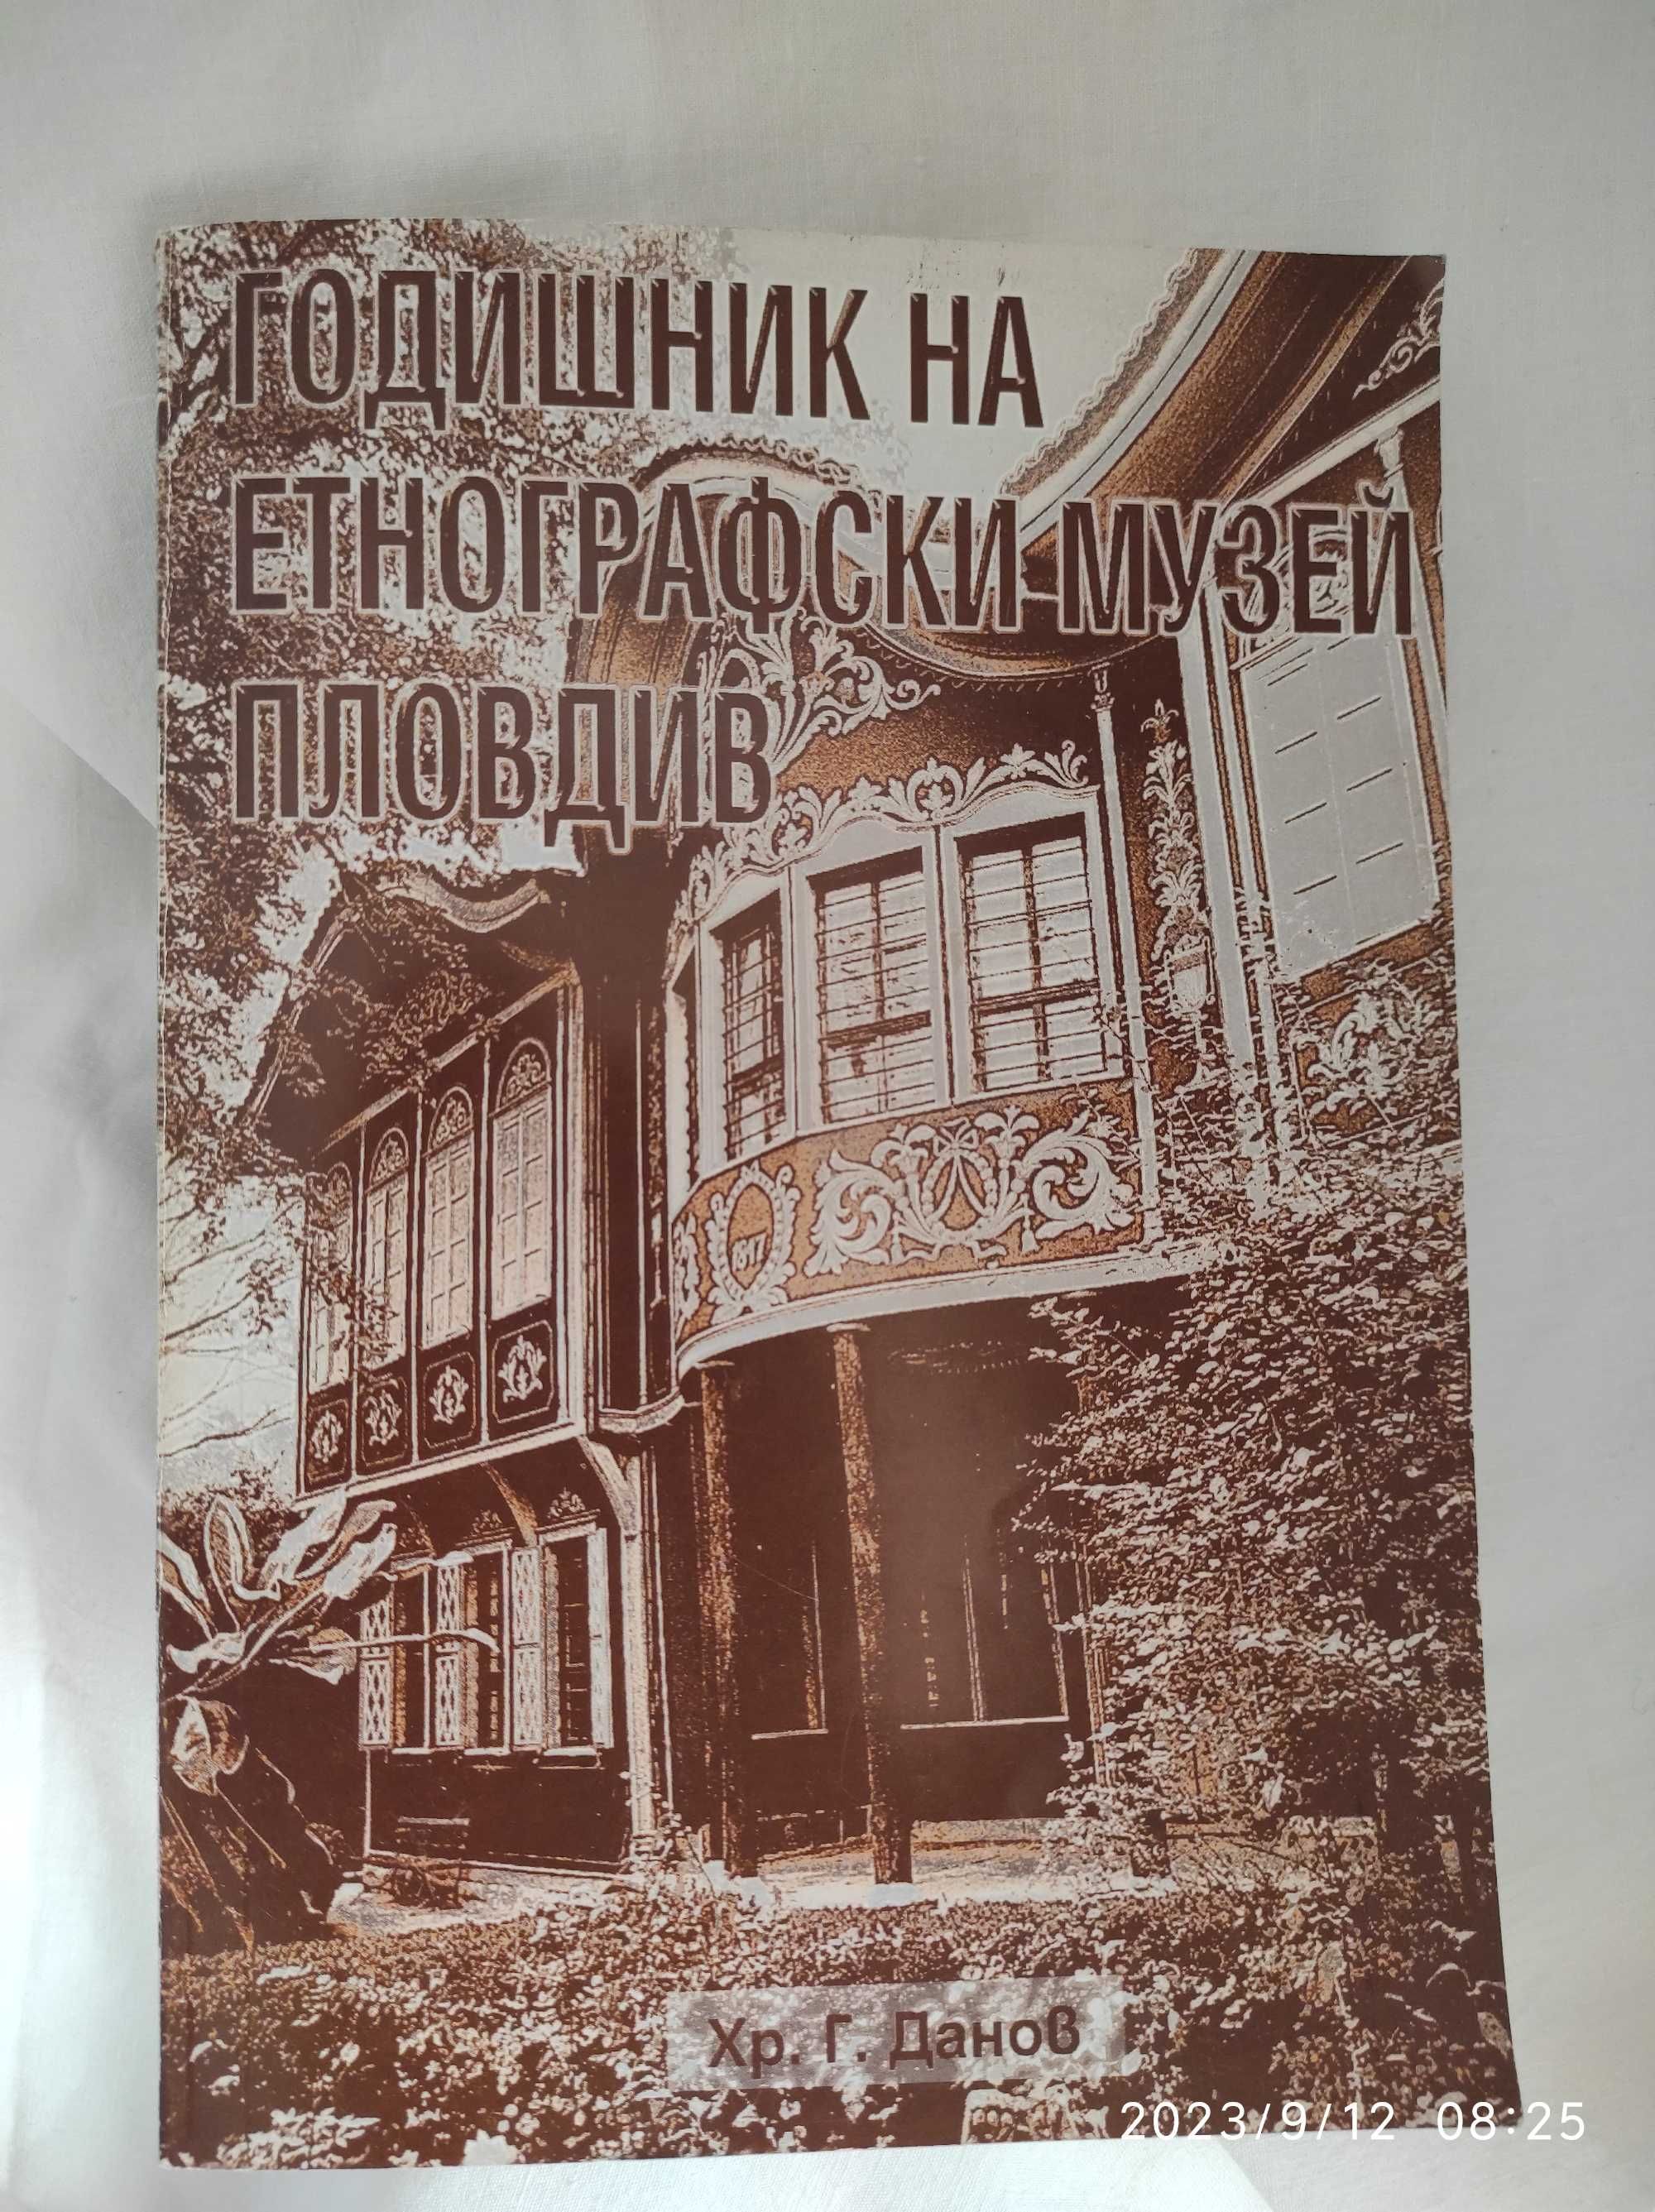 Годишник на етнографски музей Пловдив